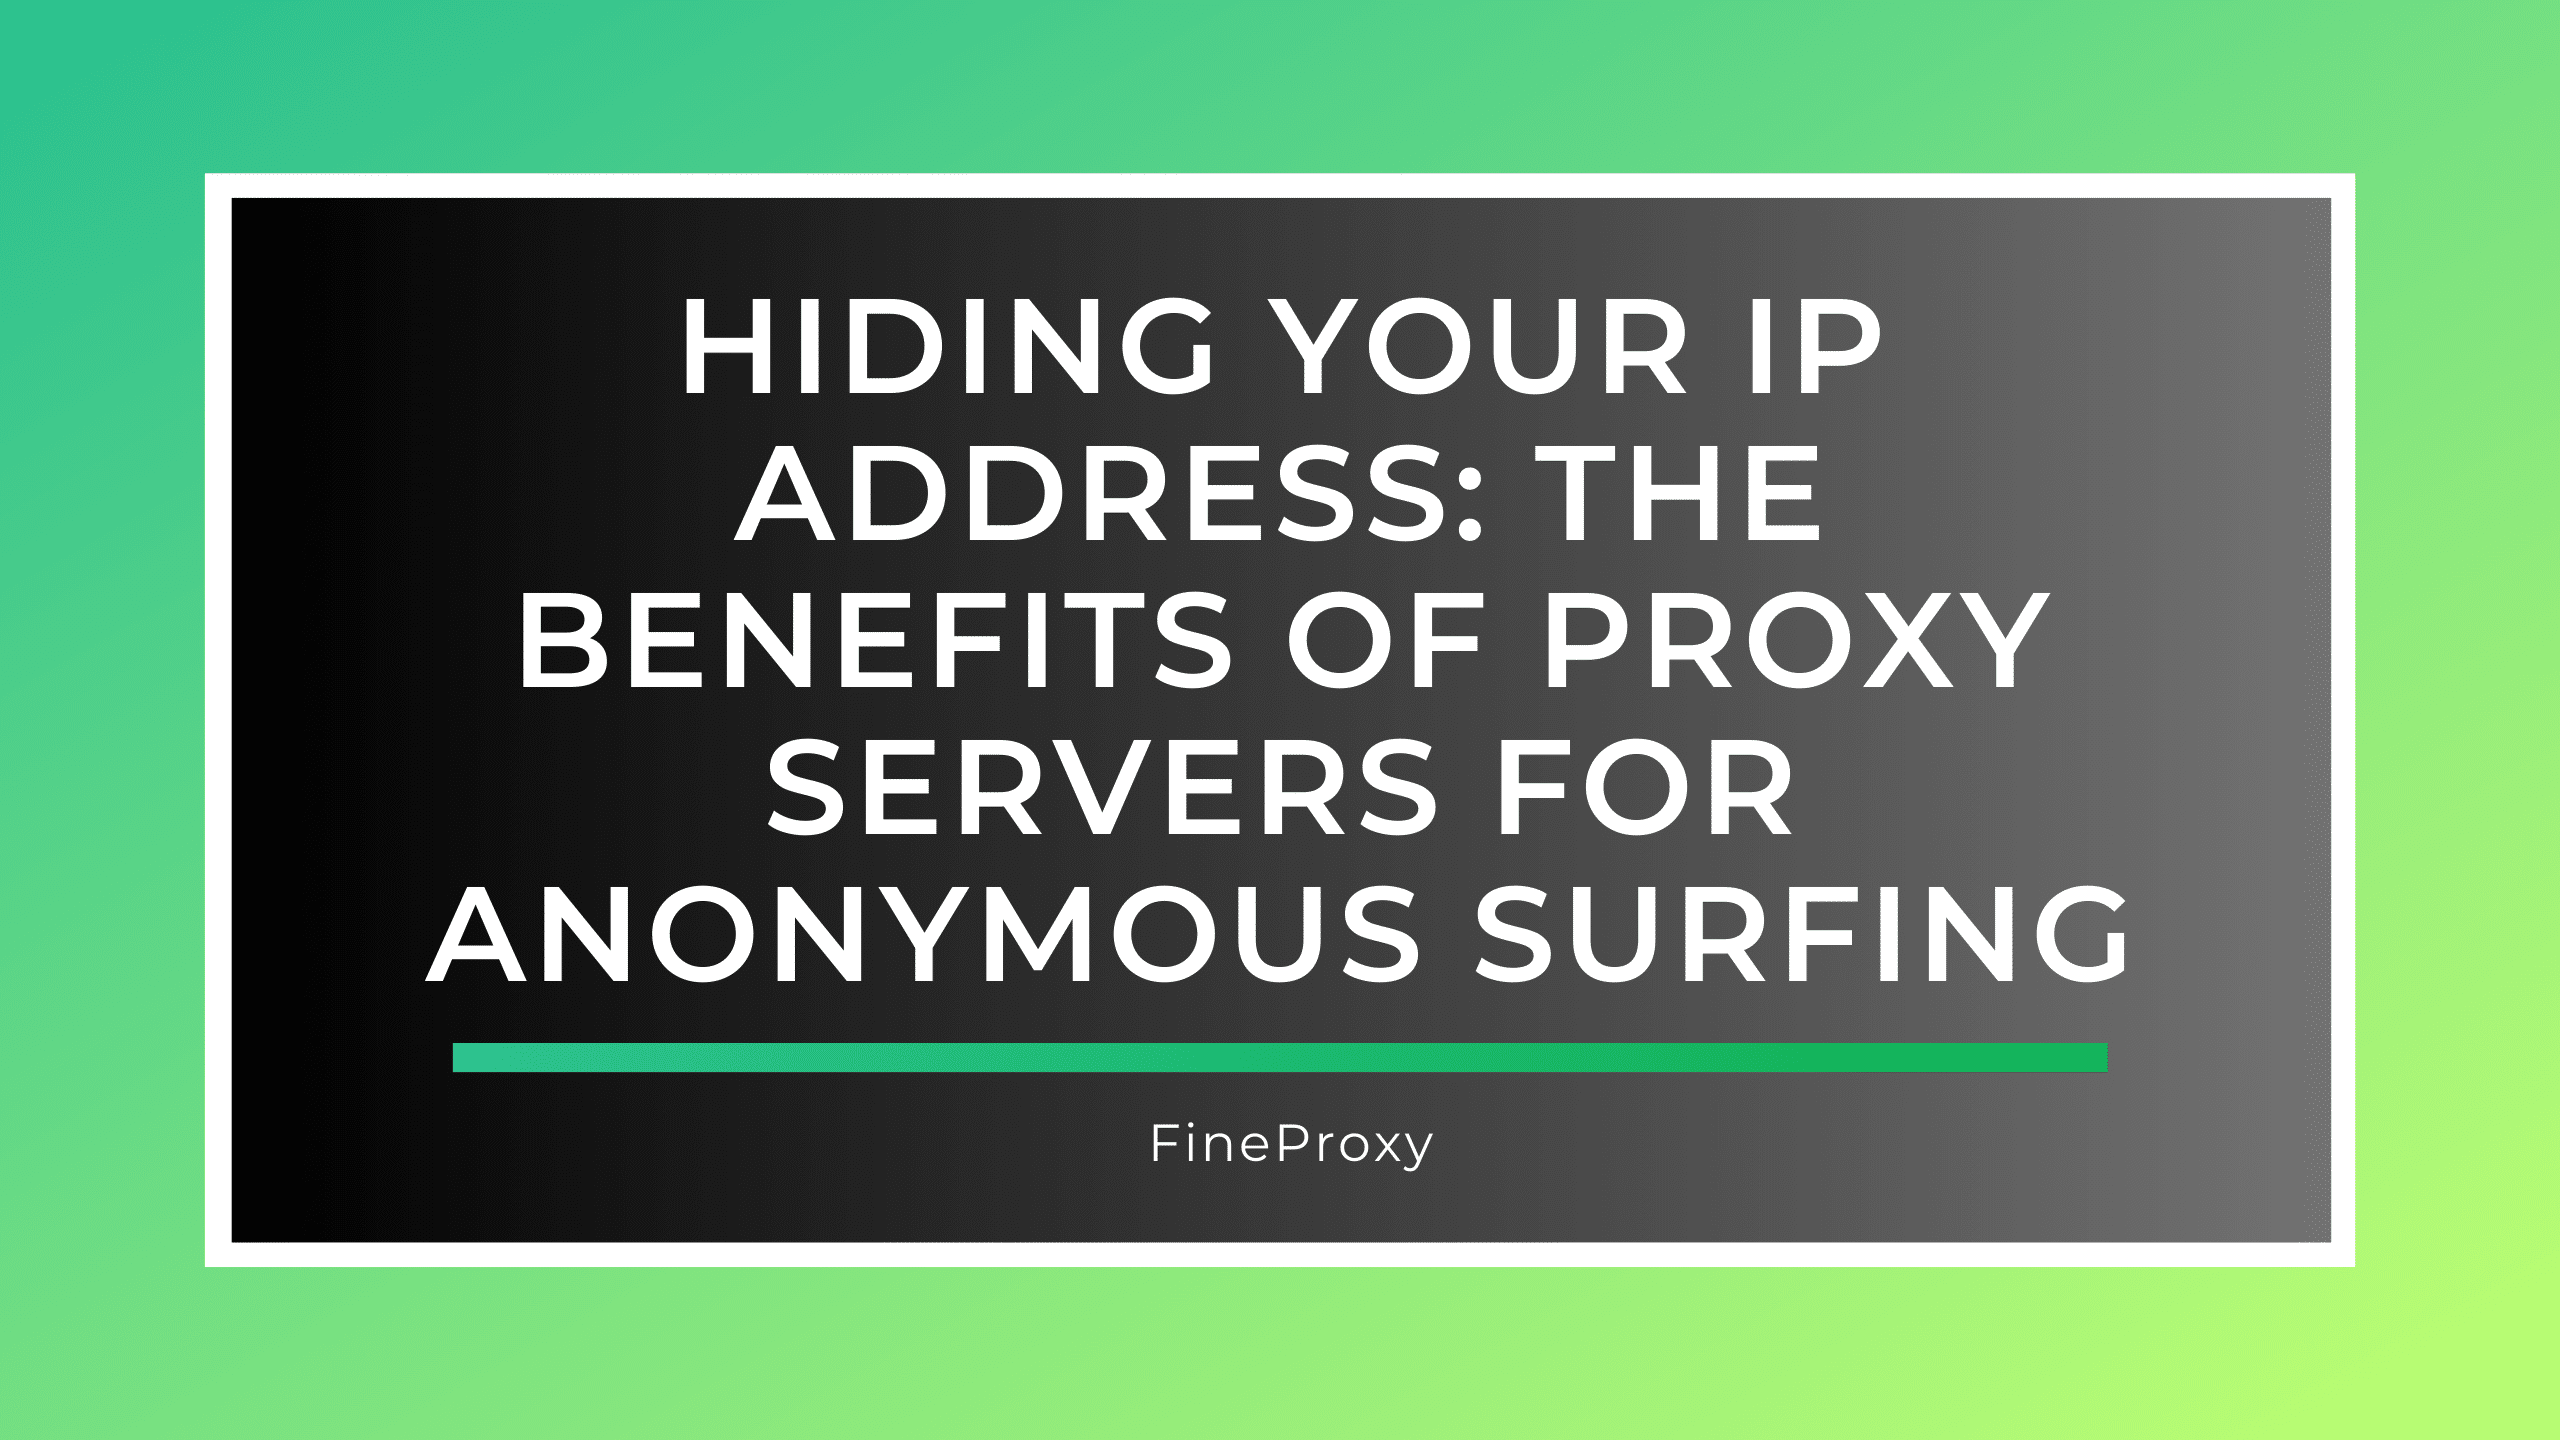 अपना आईपी पता छिपाना: गुमनाम सर्फिंग के लिए प्रॉक्सी सर्वर के लाभ